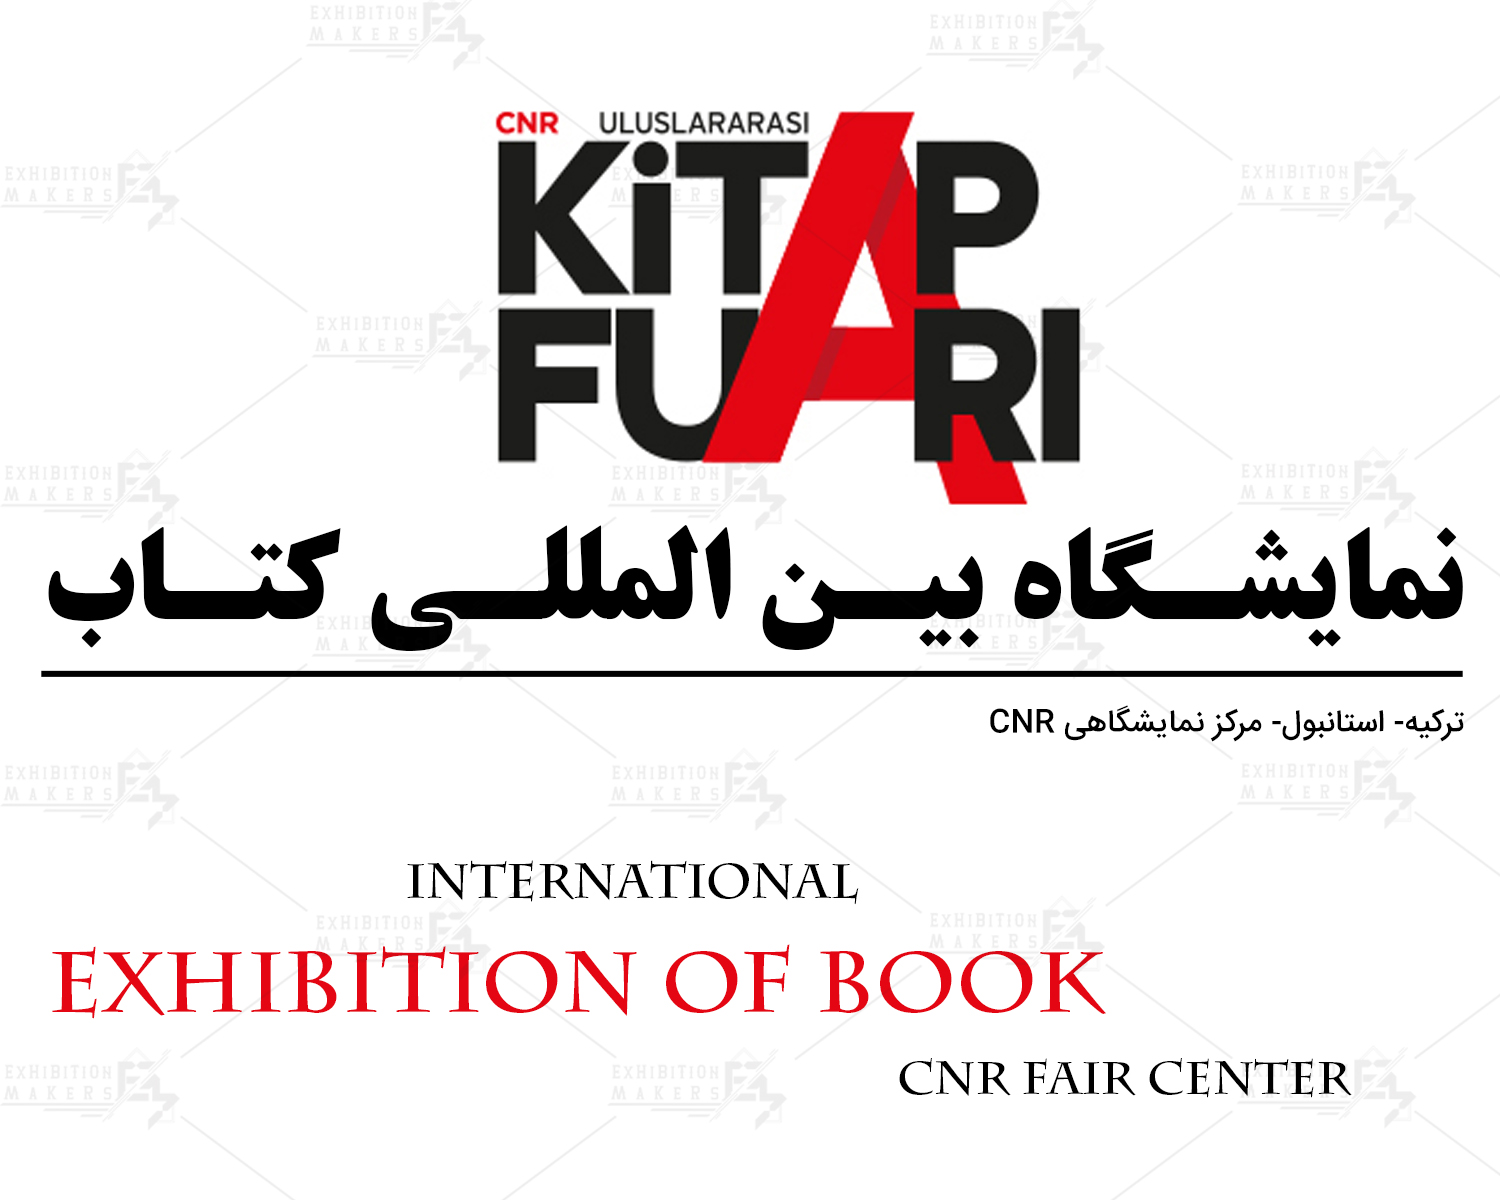 نمایشگاه بین المللی کتاب ترکیه، استانبول (CNR Fair Center)